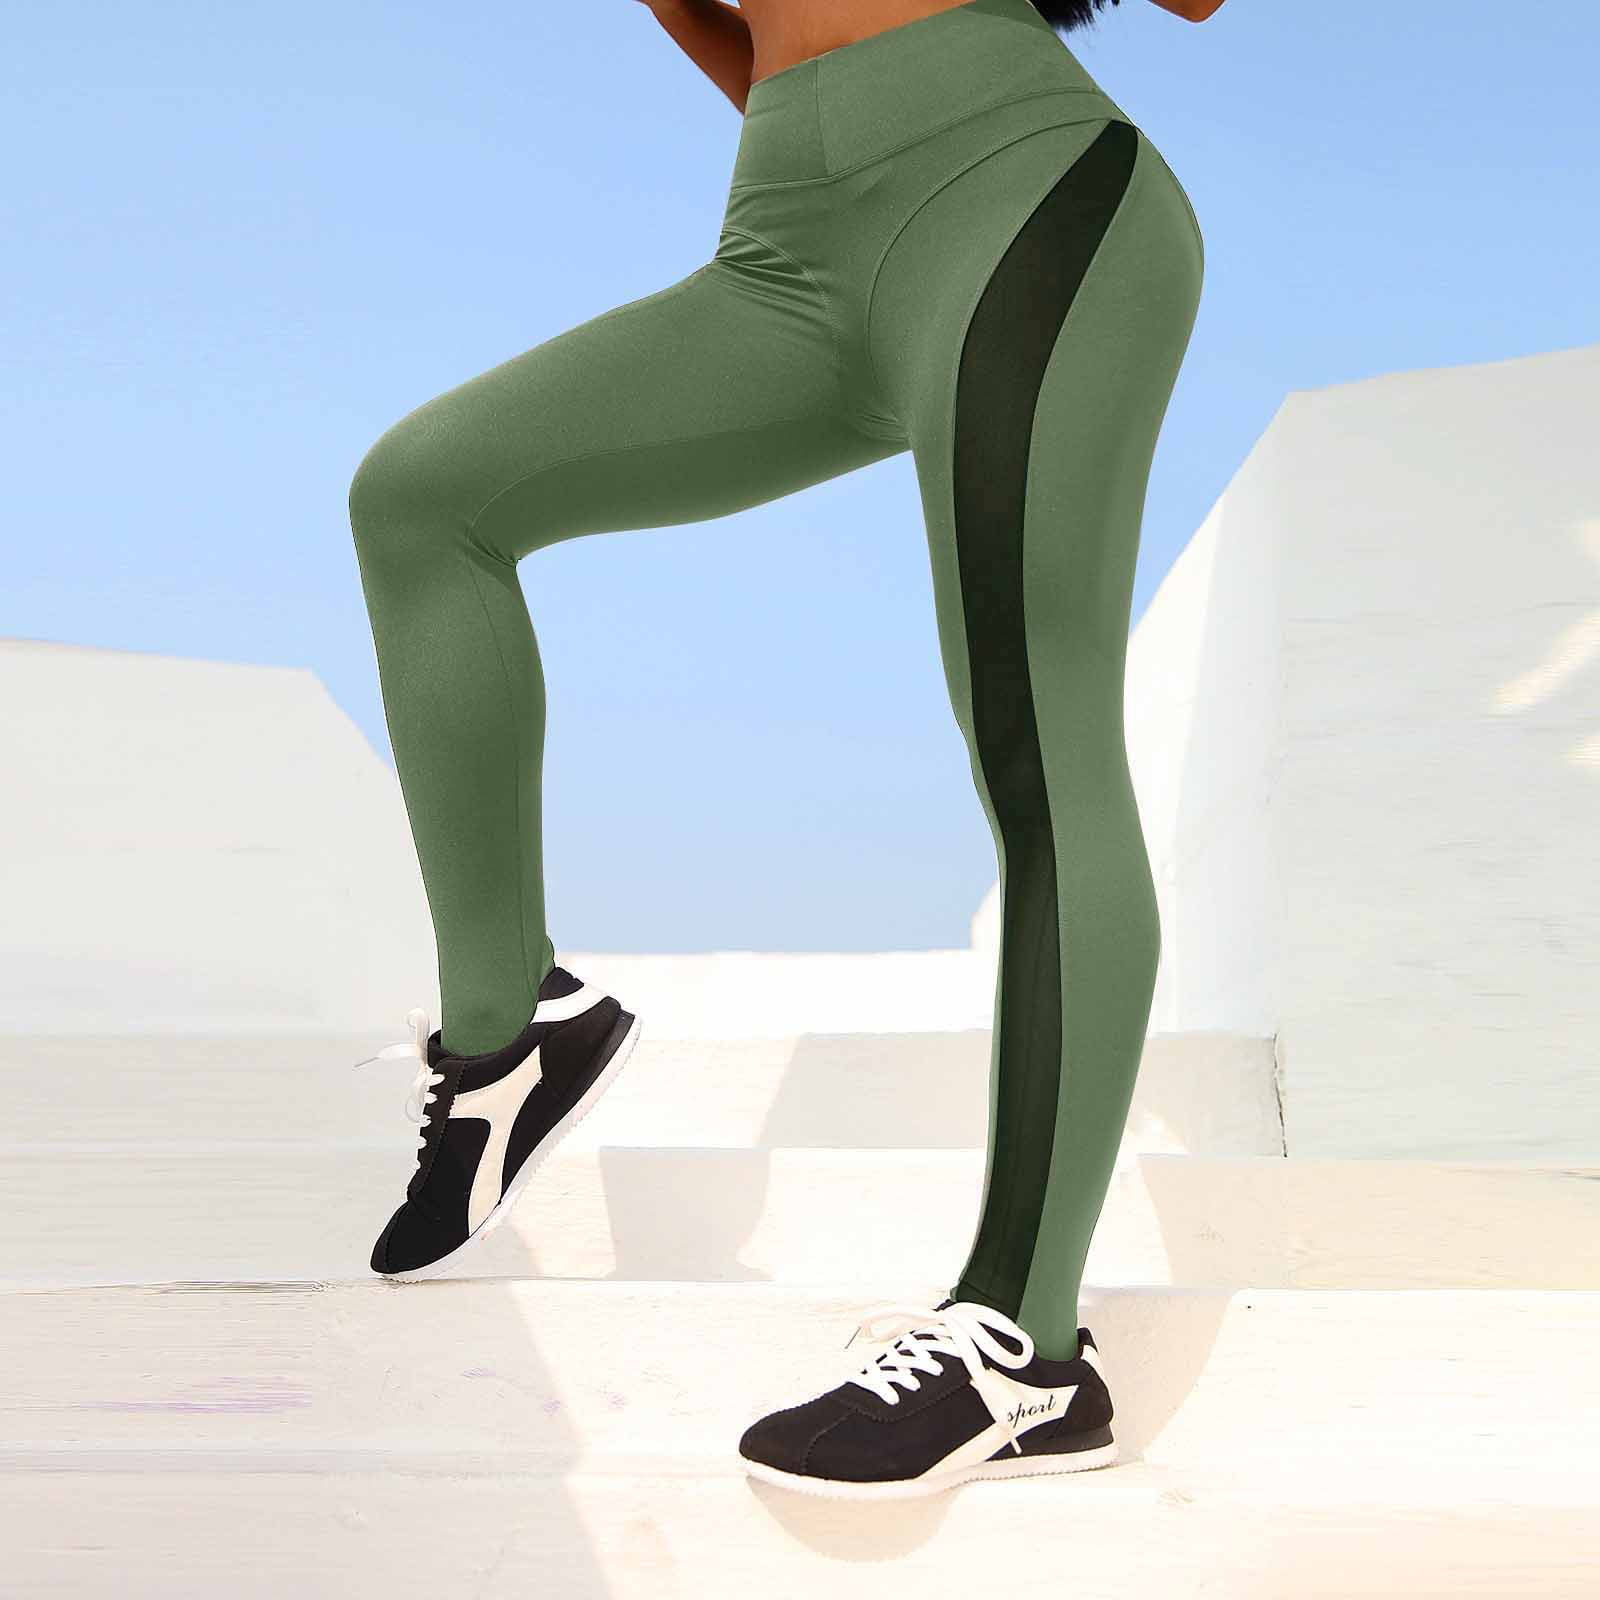 HSMQHJWE Yoga Pants Petite Women Running Leggings Workout